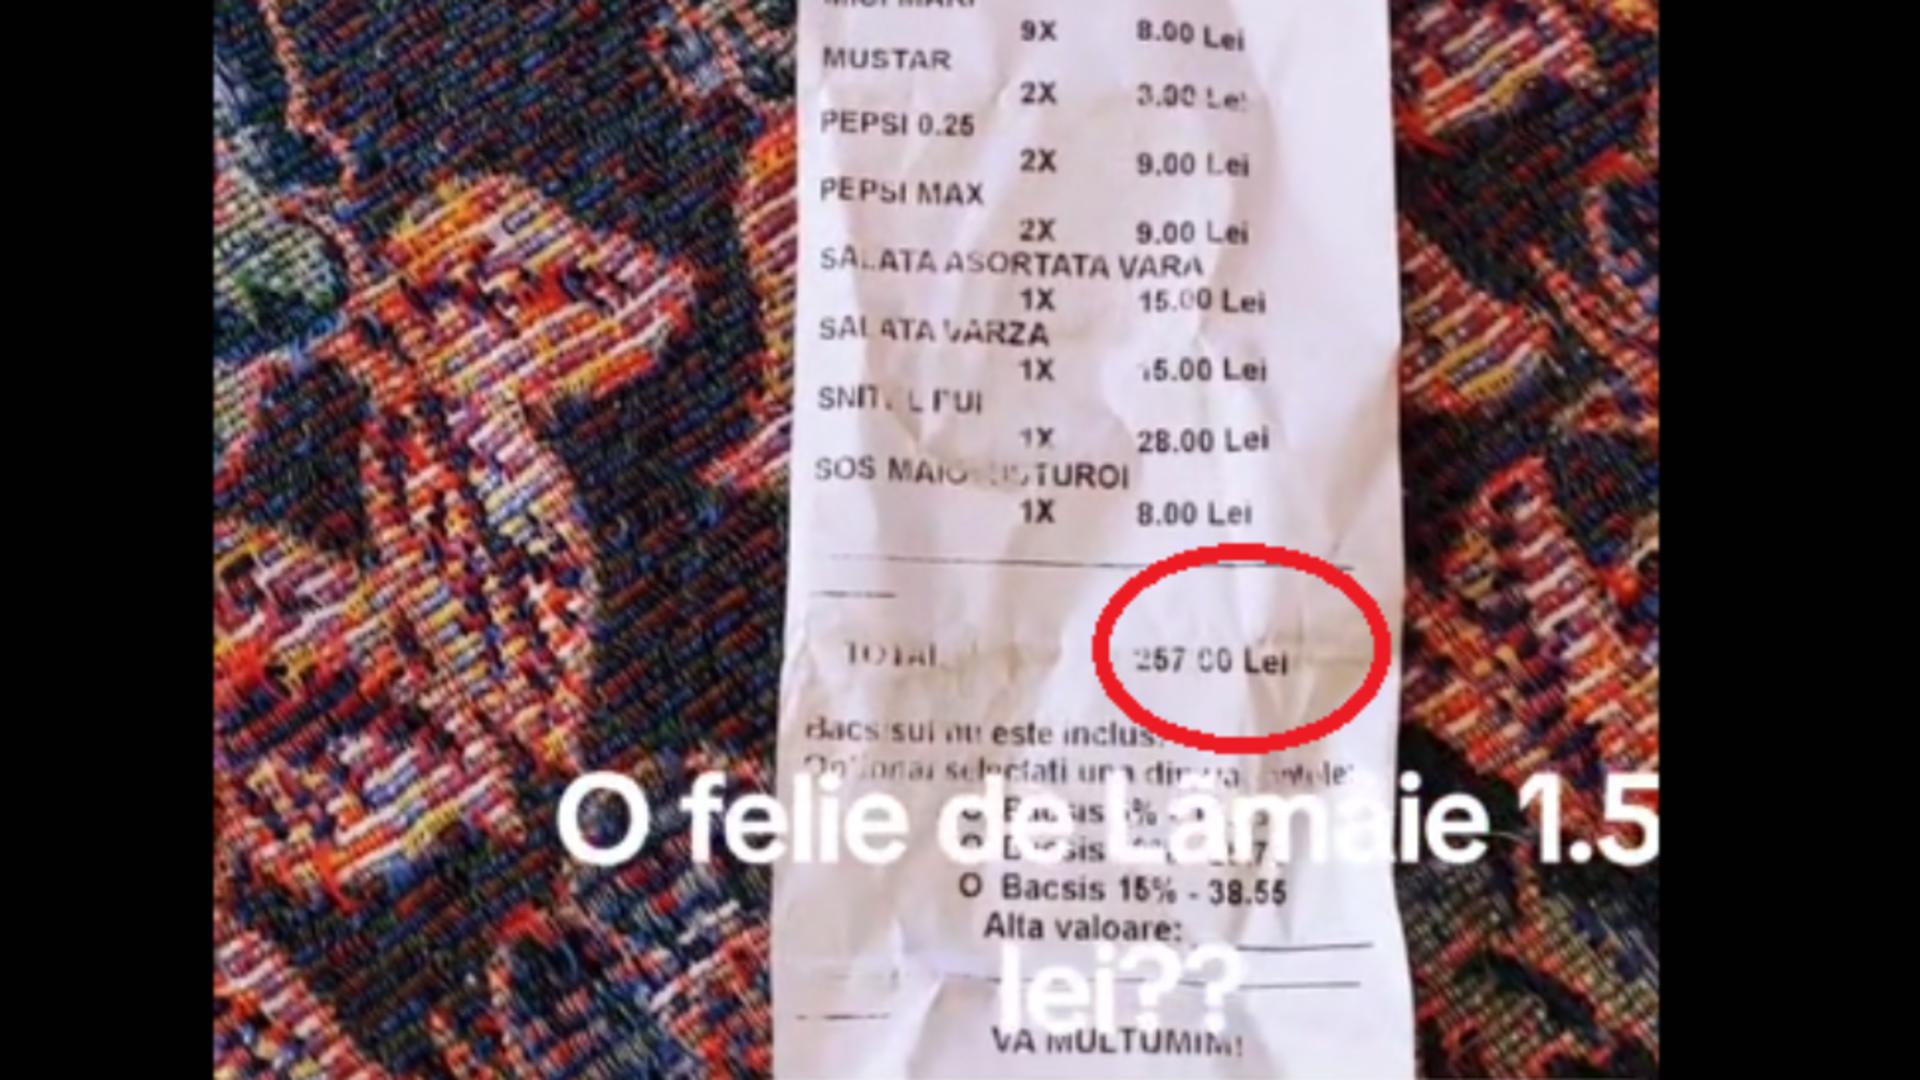 Turist, șocat de prețurile de pe litoral. Cât a plătit pentru o felie de lămâie la o terasă din Costinești: “Rușine, România!” – VIDEO